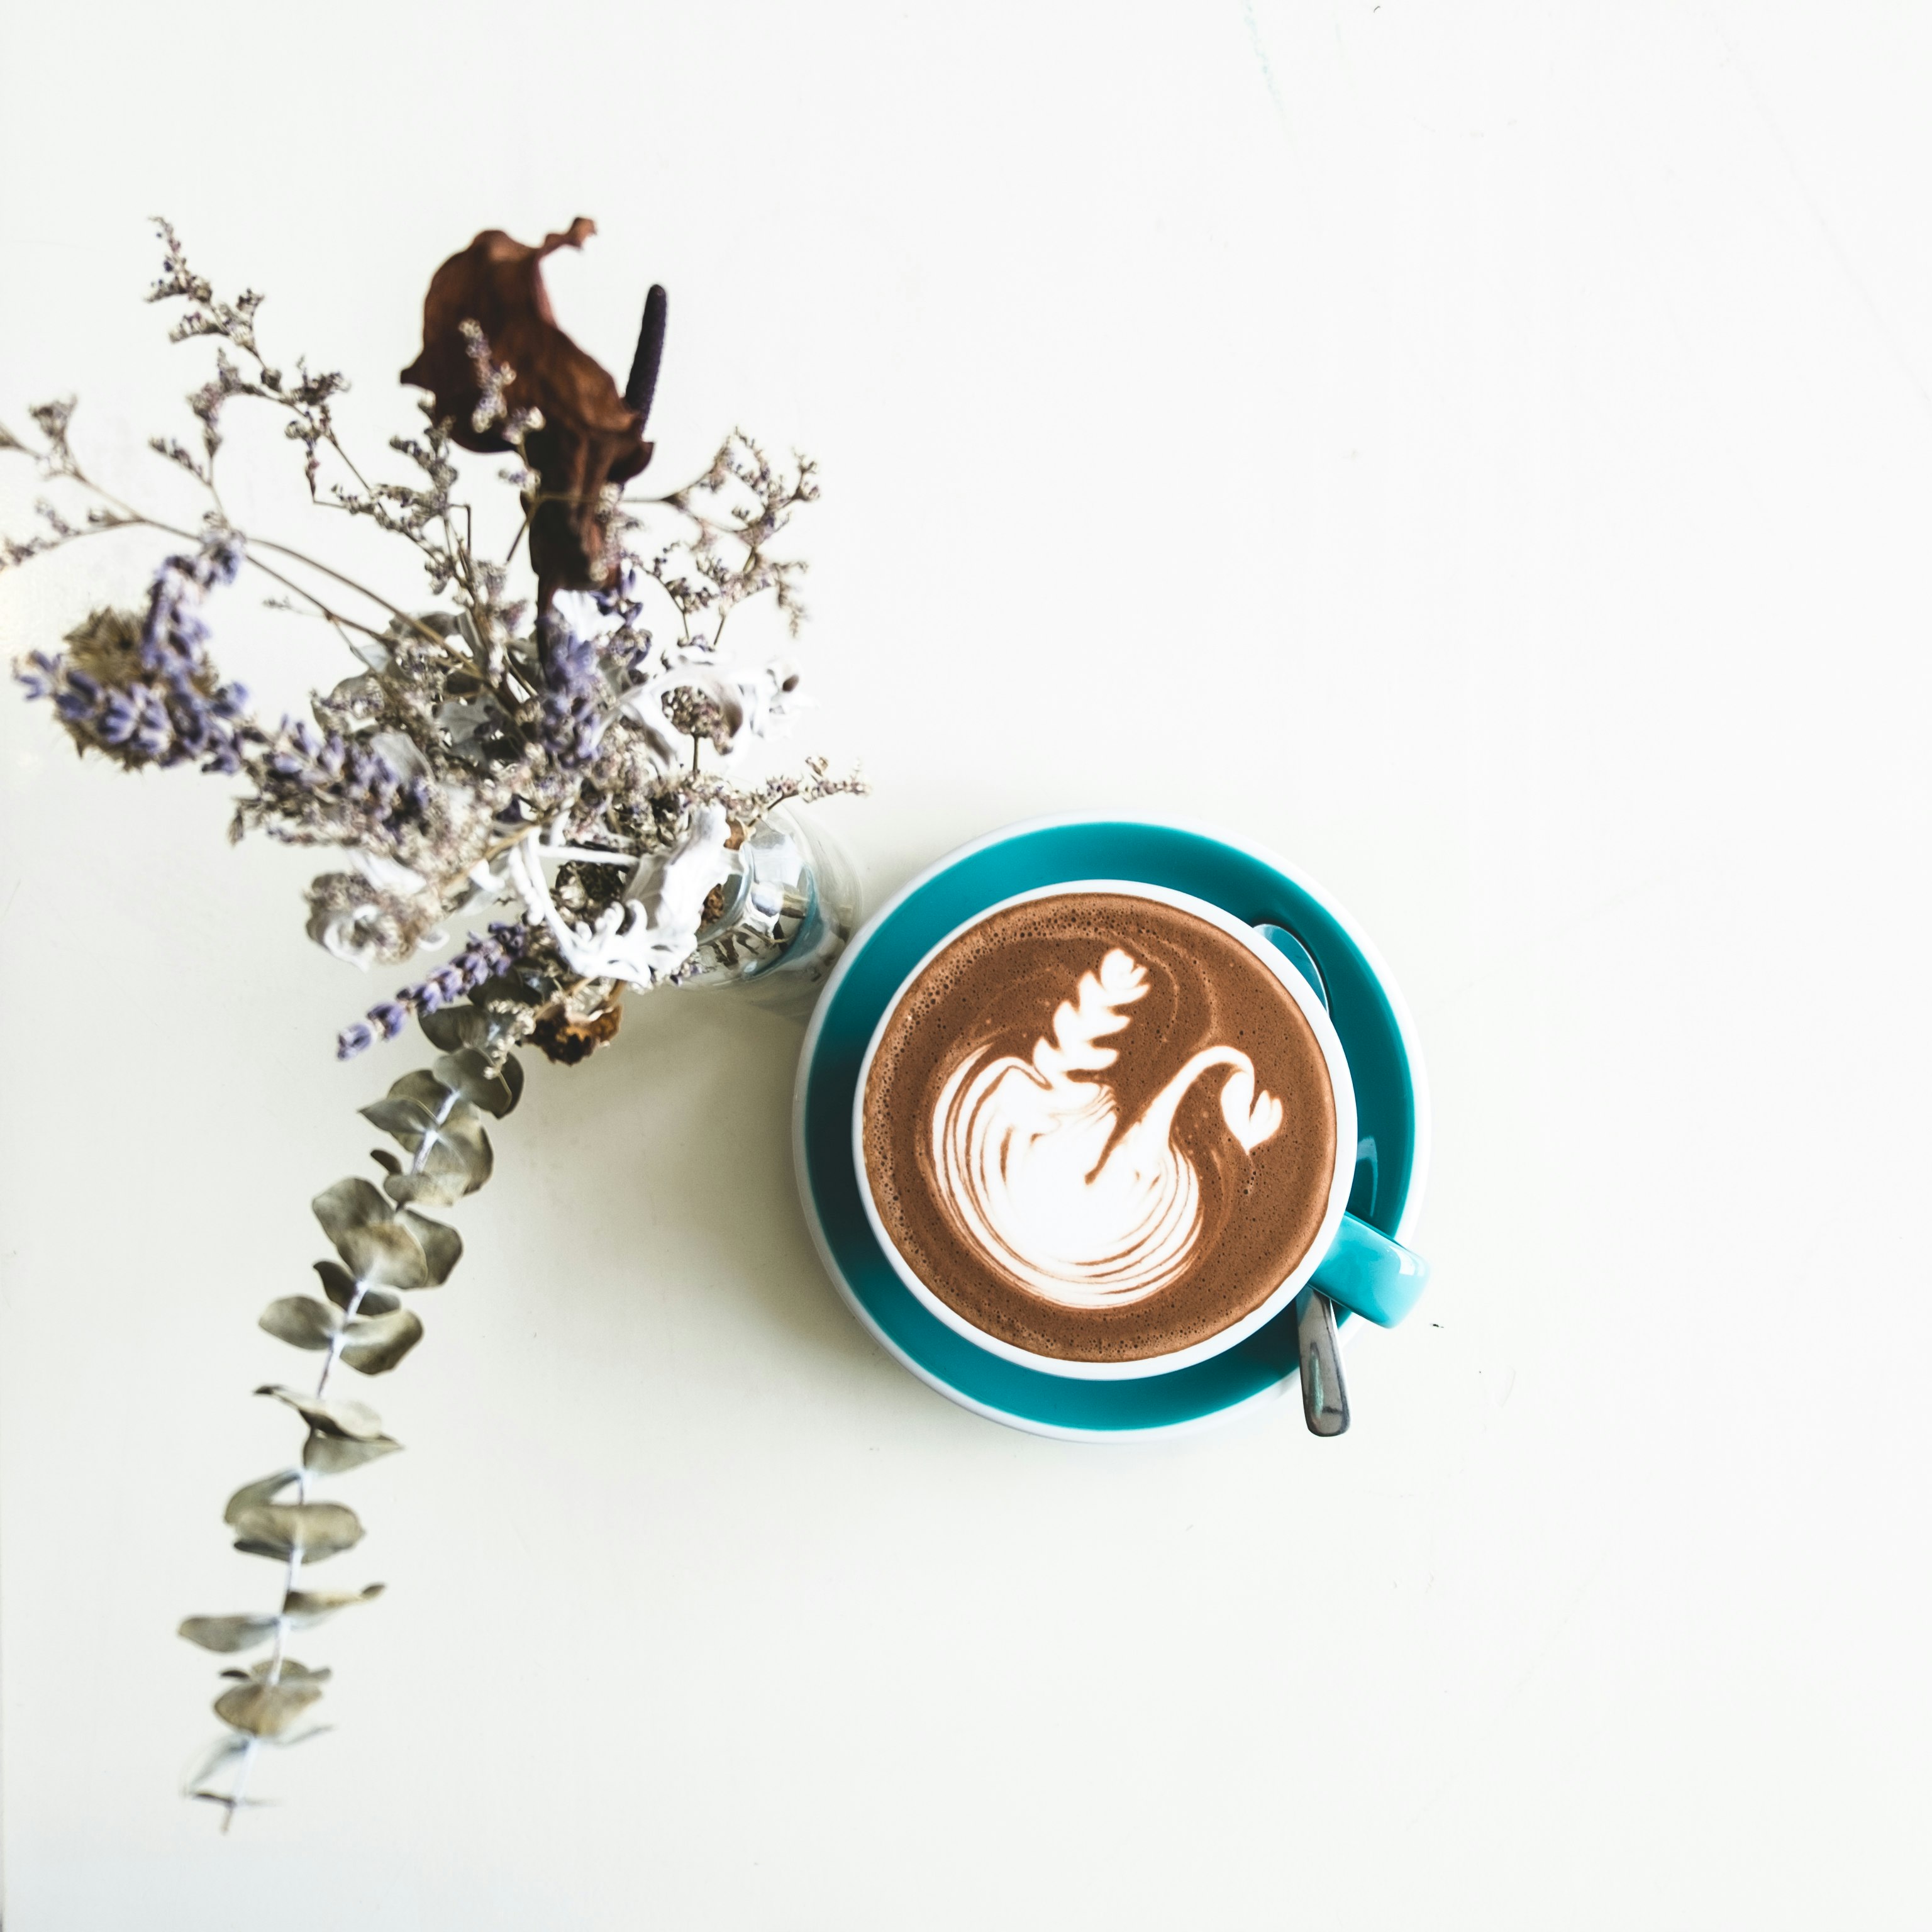 chocolate latte in cup beside flowers in vase